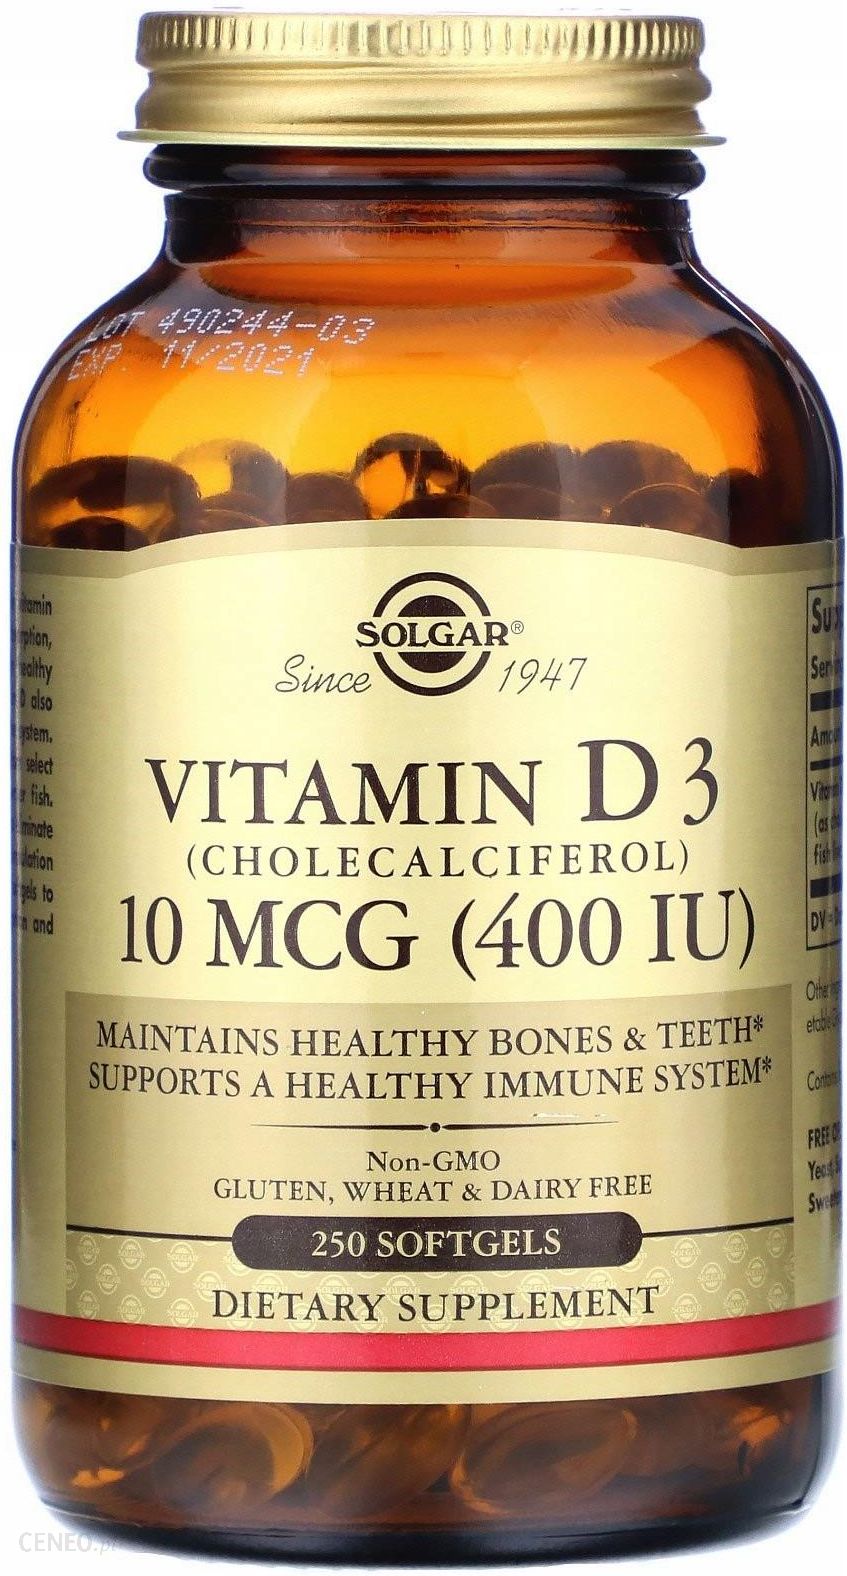 Витамин д3 10 мкг. Капсулы Solgar Vitamin d3. Солгар d3 10 MCG. Солгар витамин д3 капсулы. Solgar, витамин d3 (холекальциферол), 250 мкг (10 000 ме).